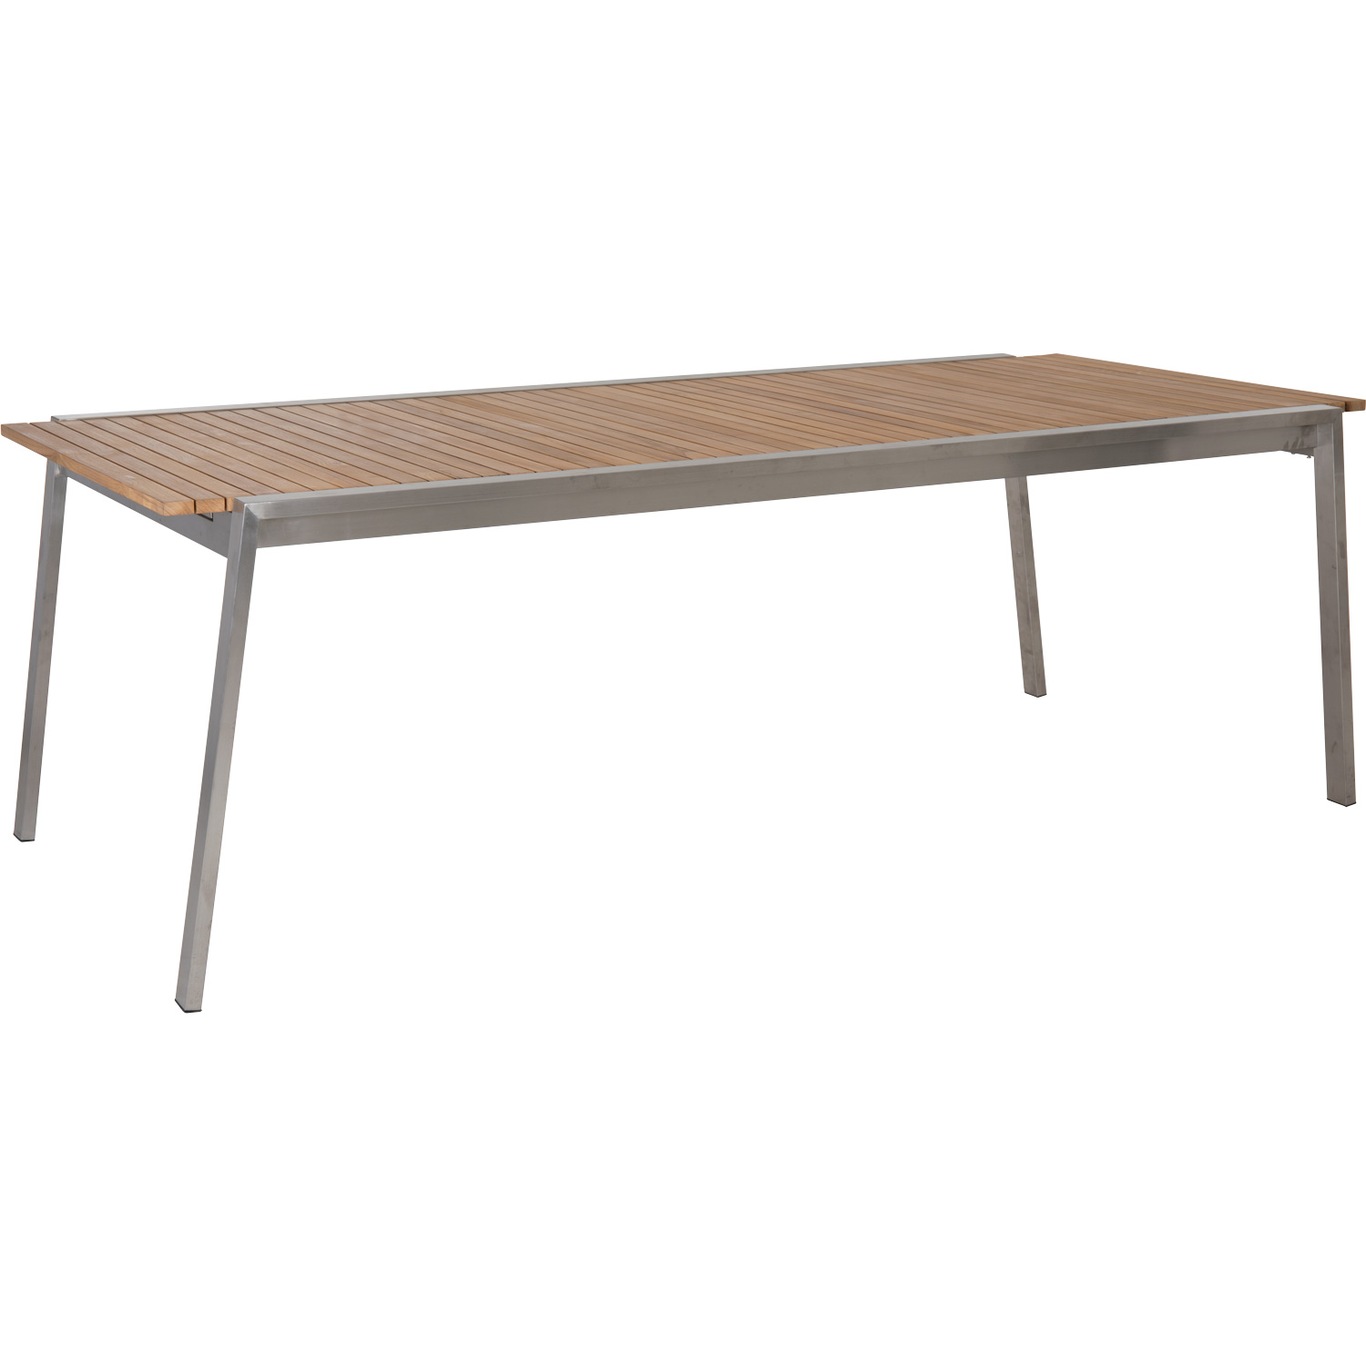 Naos Ruokapöytä 100x220-320 cm, Stainless Steel/Teak